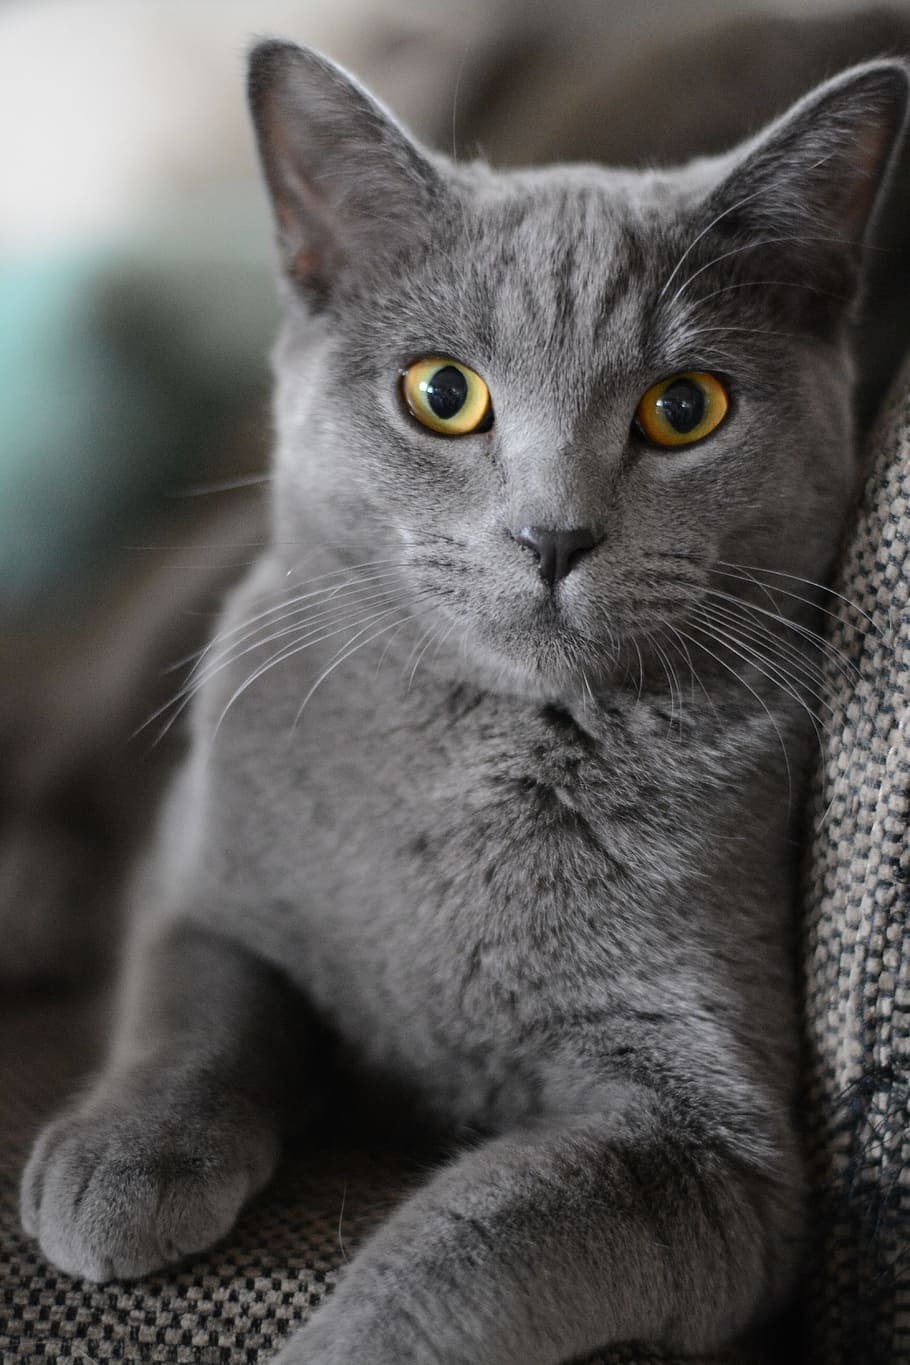 gris, gato persa, tela, gato, retrato, gatito, gato doméstico, animal, mascota, lindo